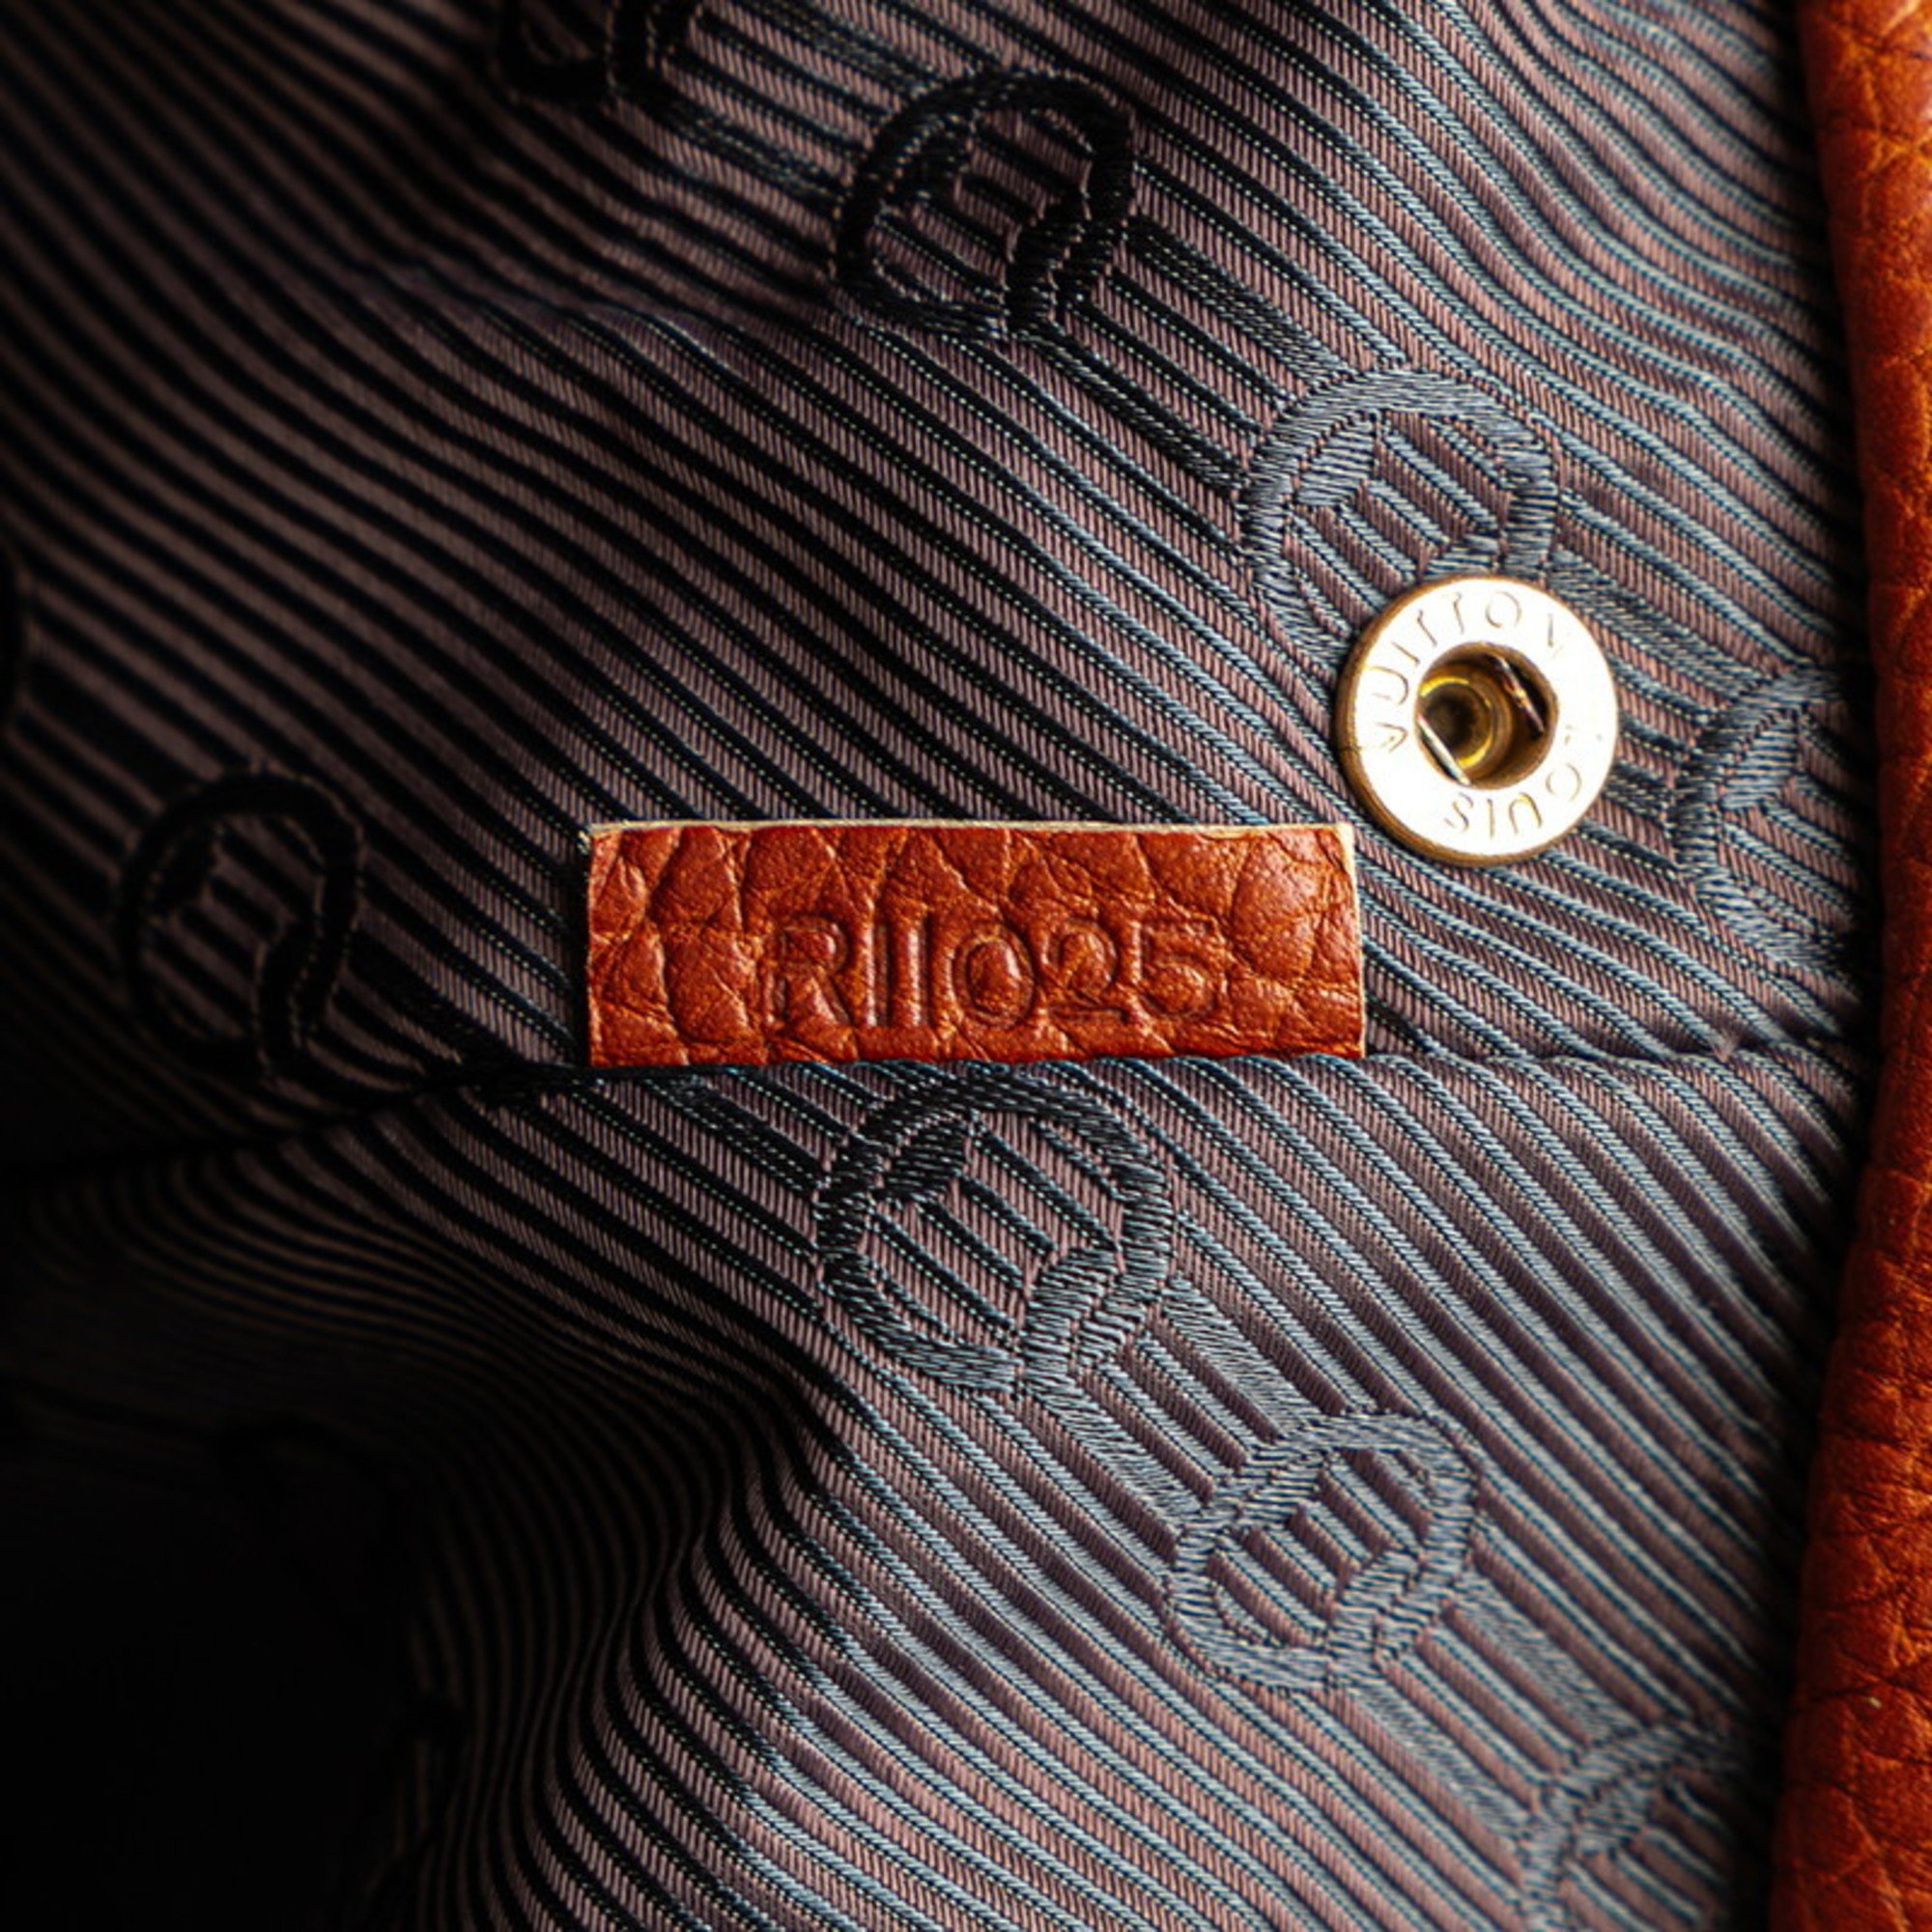 Louis Vuitton Tobaco Tote Bag Shoulder M95142 Brown Leather Women's LOUIS VUITTON